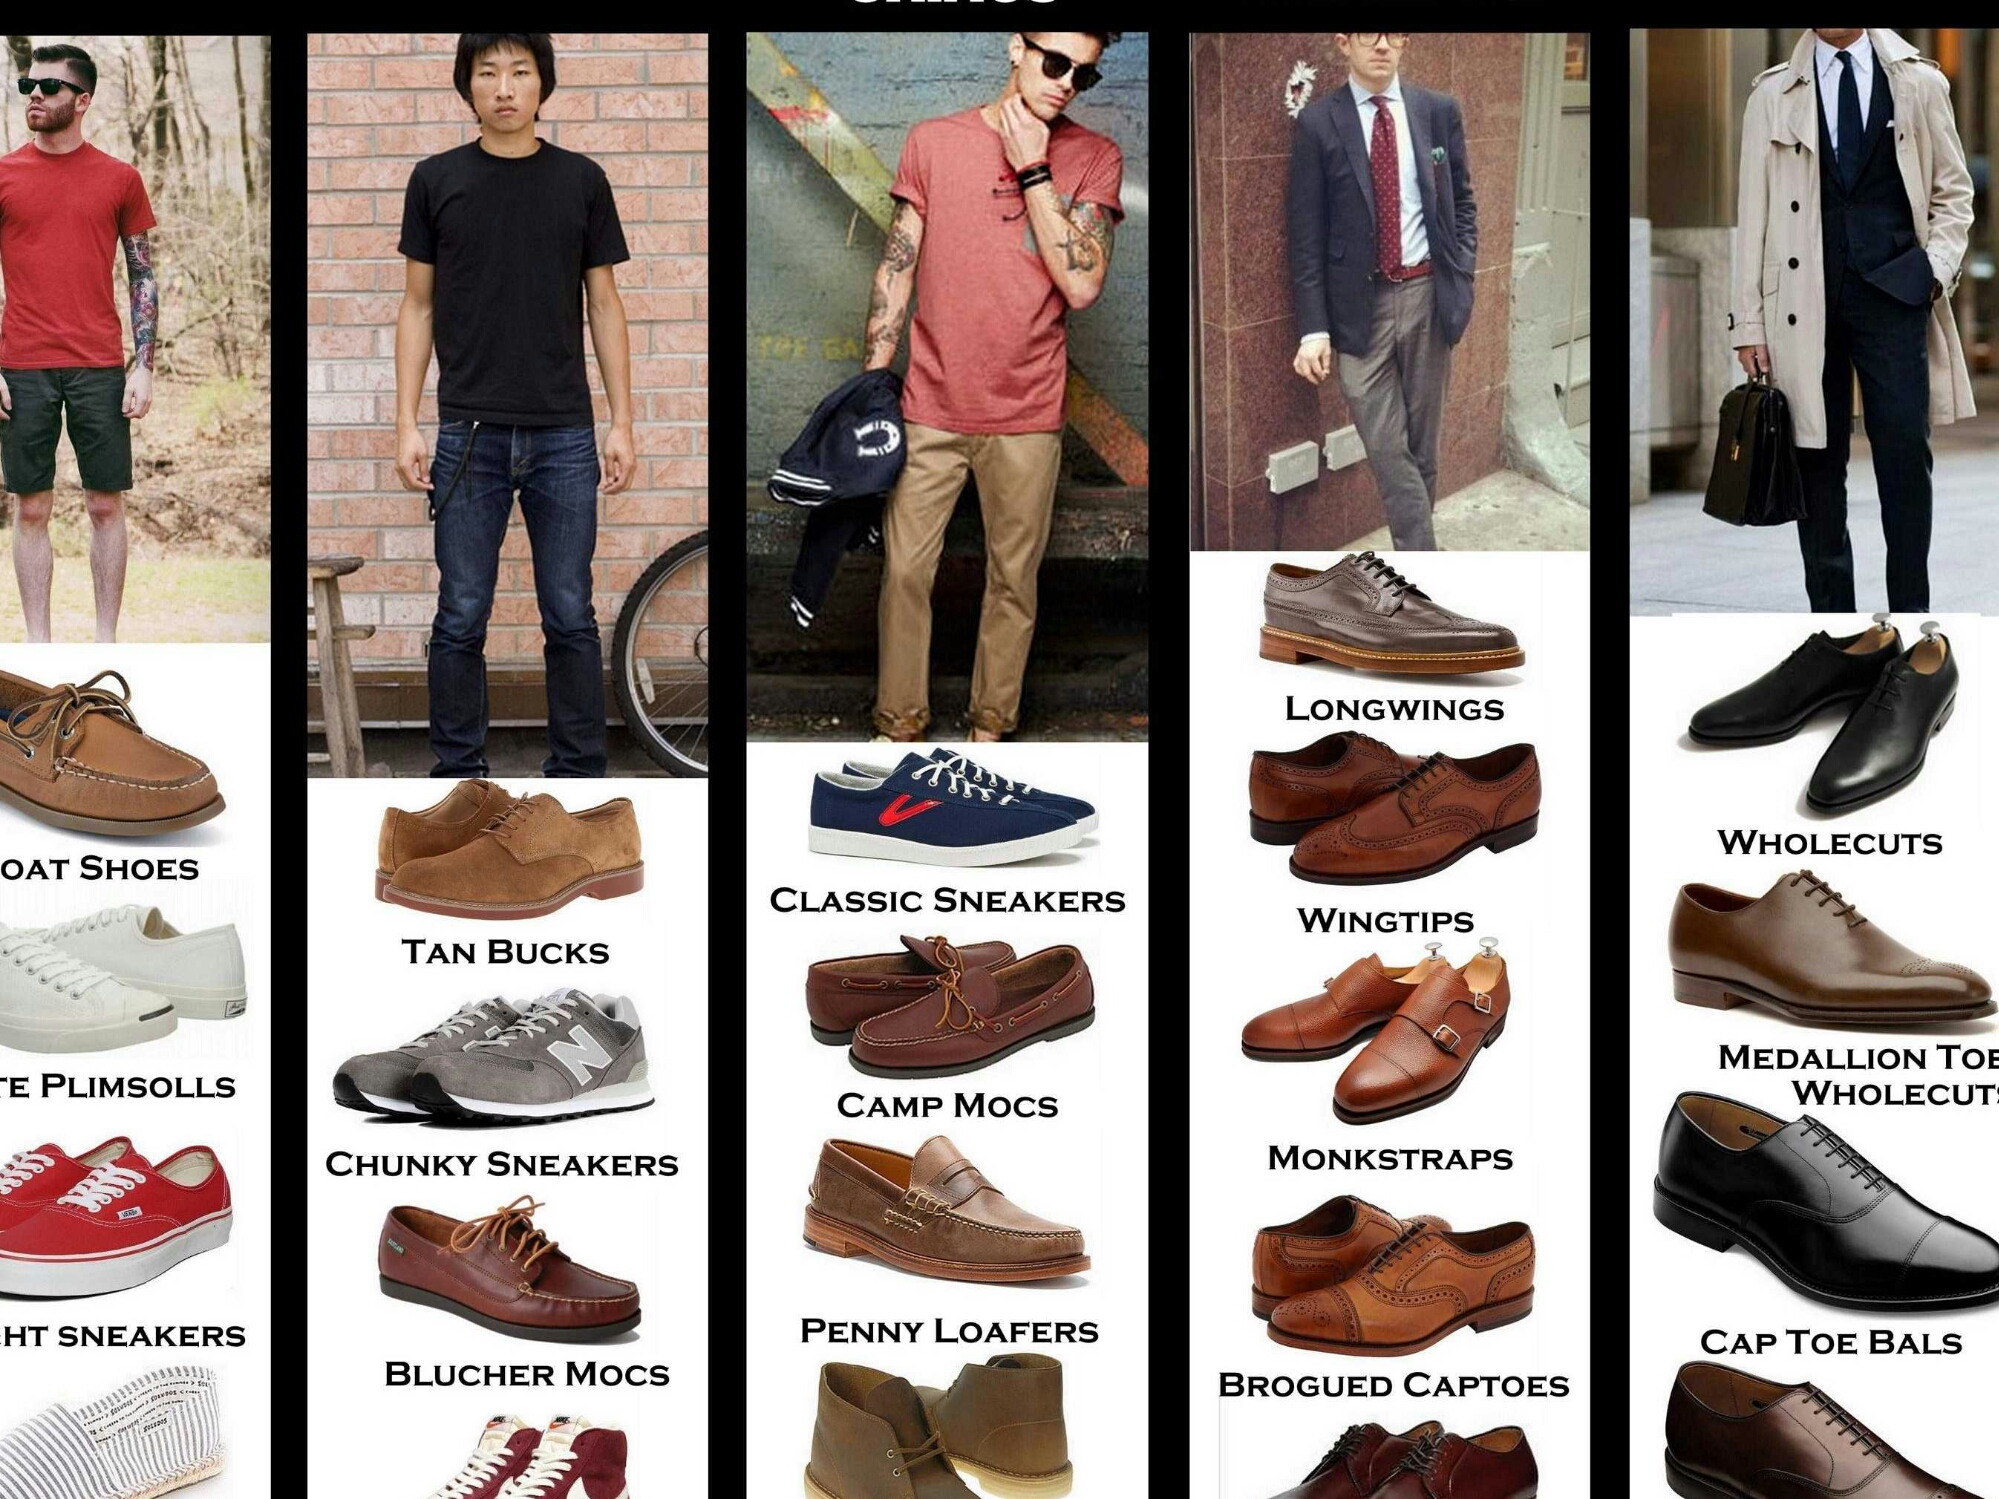 Все модели обуви мужской